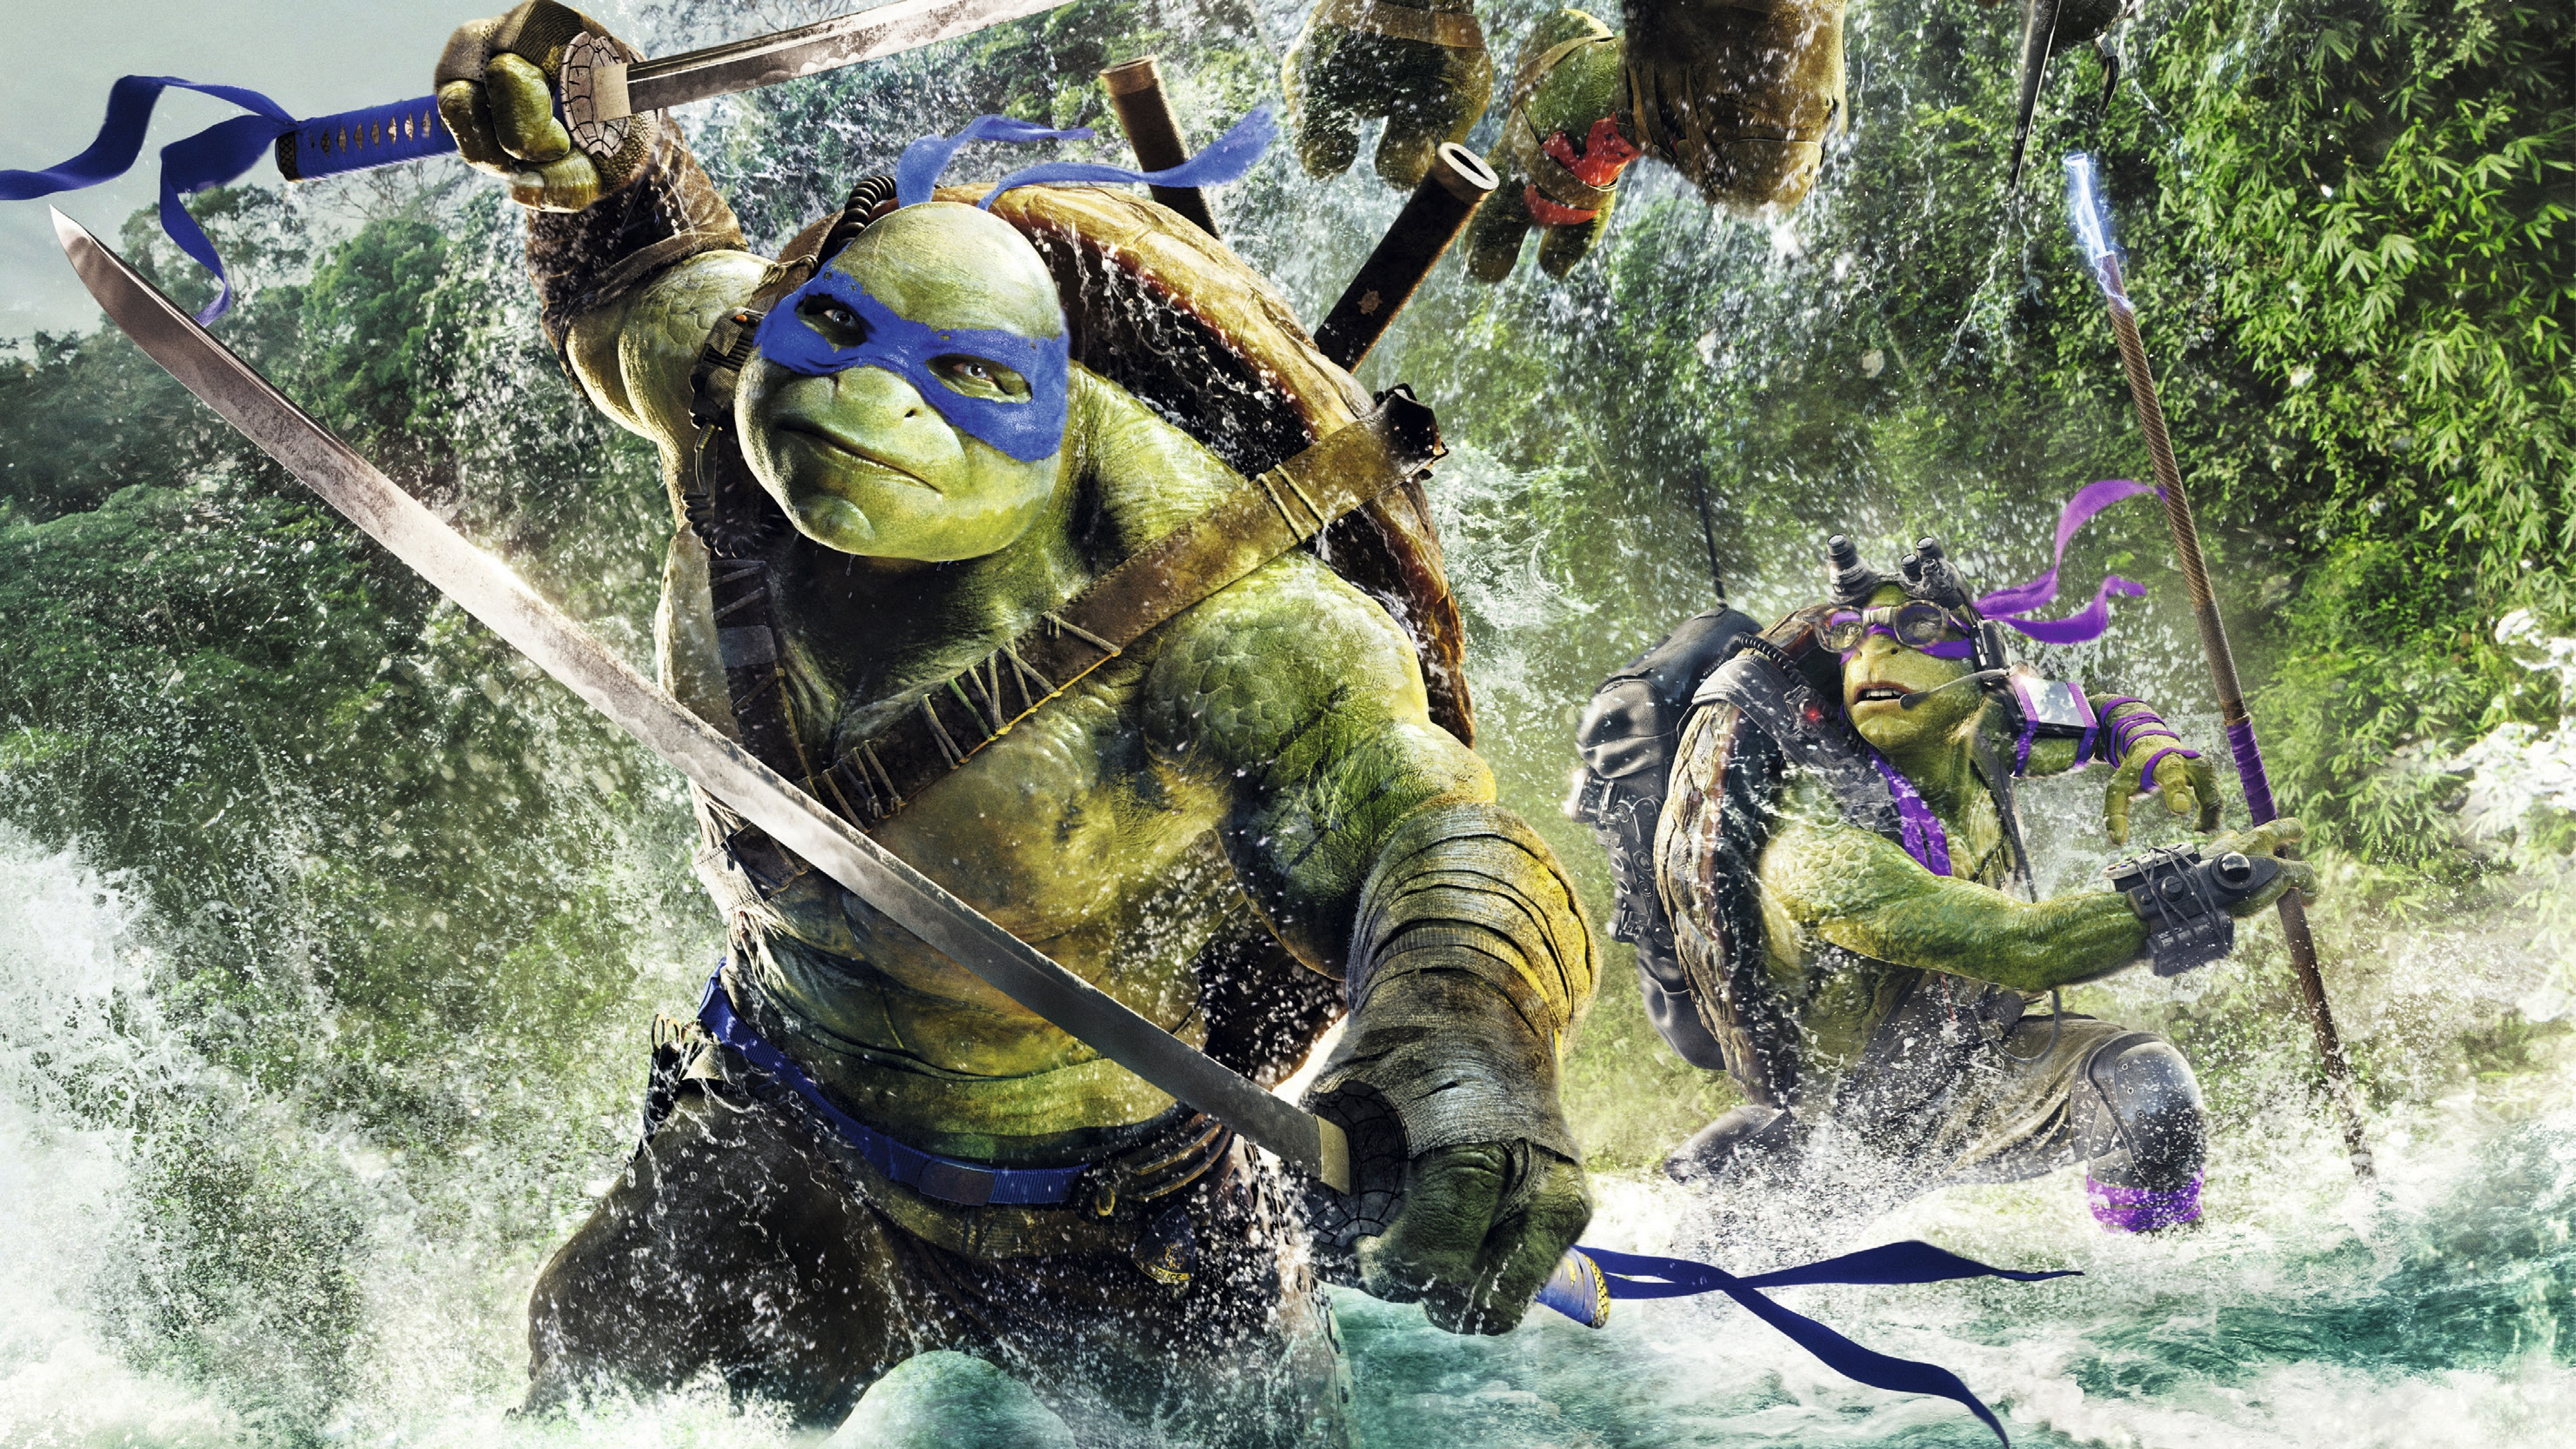 Donatello Tmnt Leonardo Tmnt Teenage Mutant Ninja Turtles 2014 3722x2094